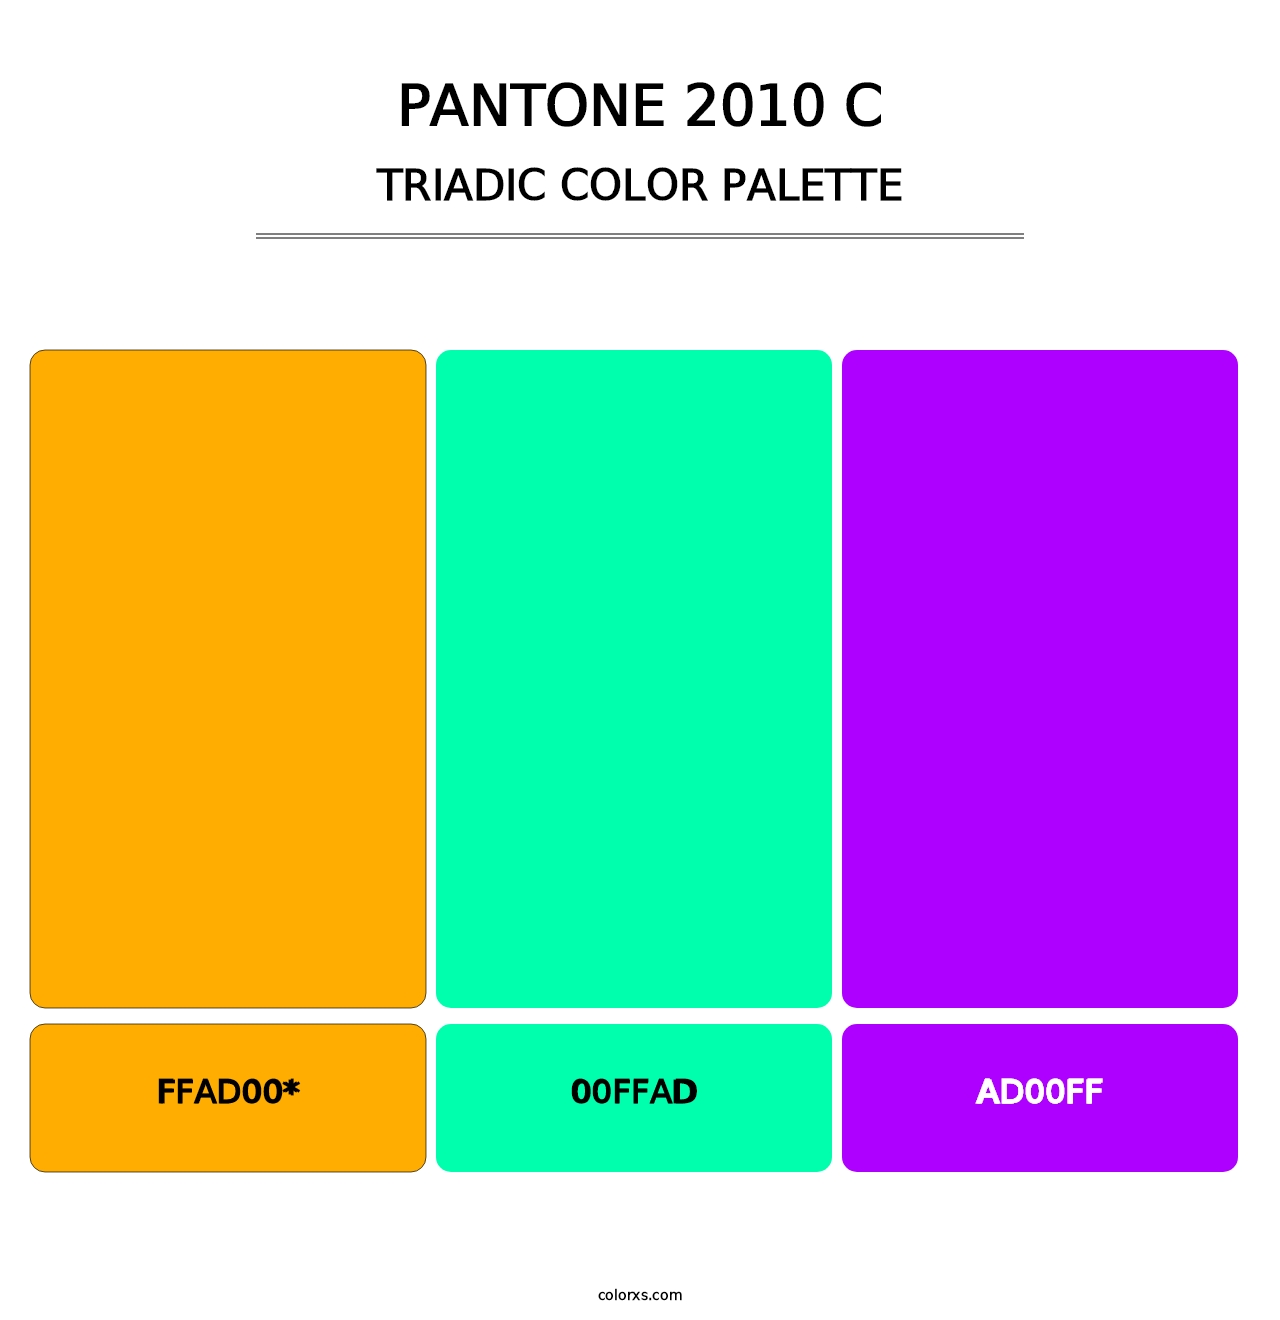 PANTONE 2010 C - Triadic Color Palette